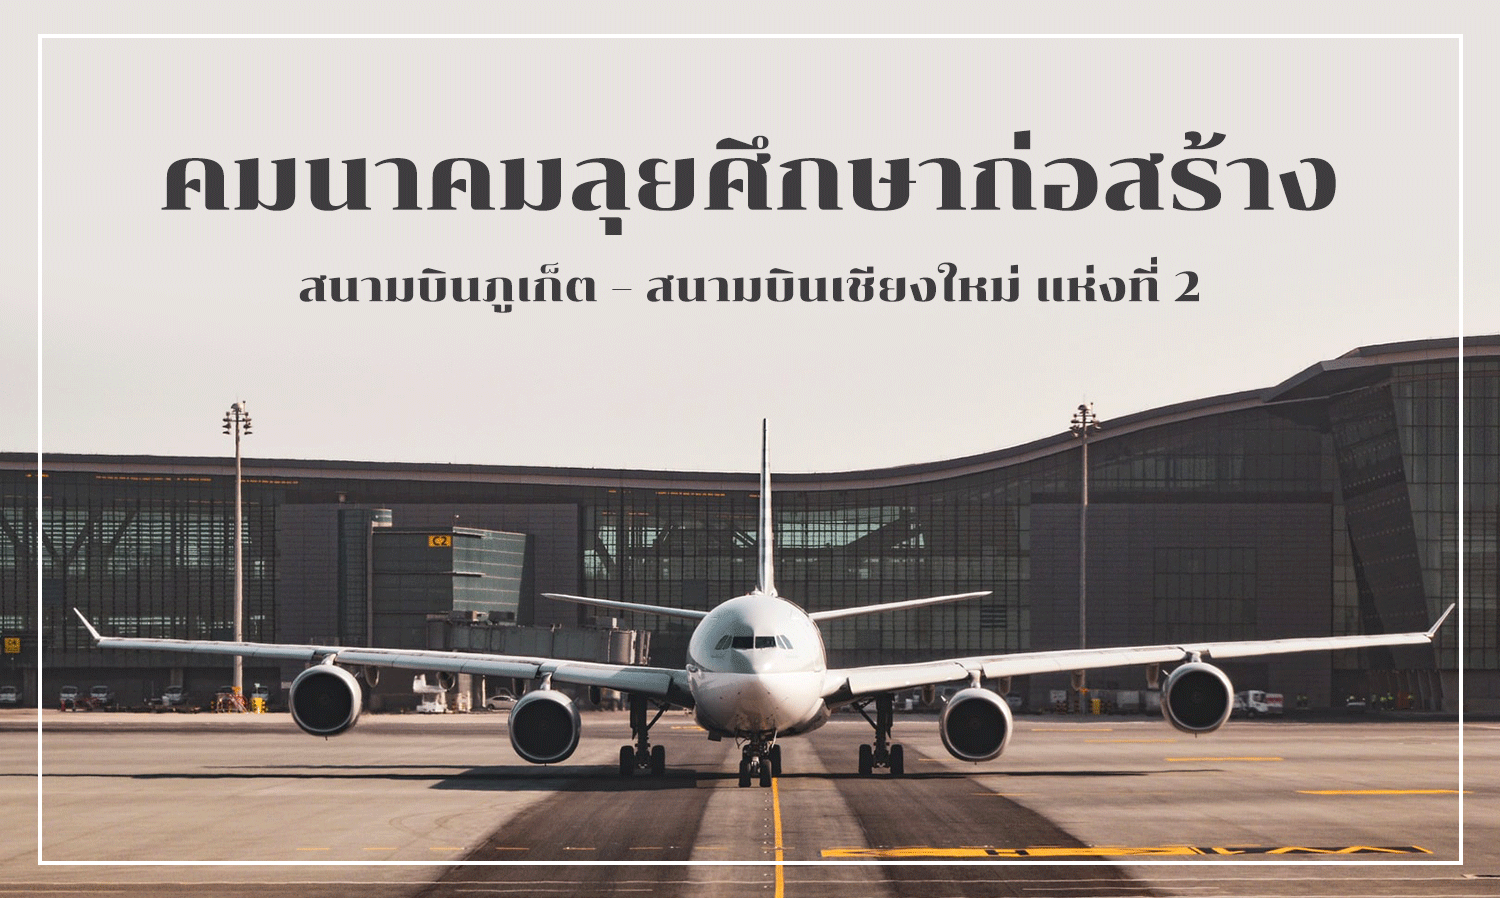 คมนาคมลุยศึกษาก่อสร้างสนามบินภูเก็ต – สนามบินเชียงใหม่ แห่งที่ 2